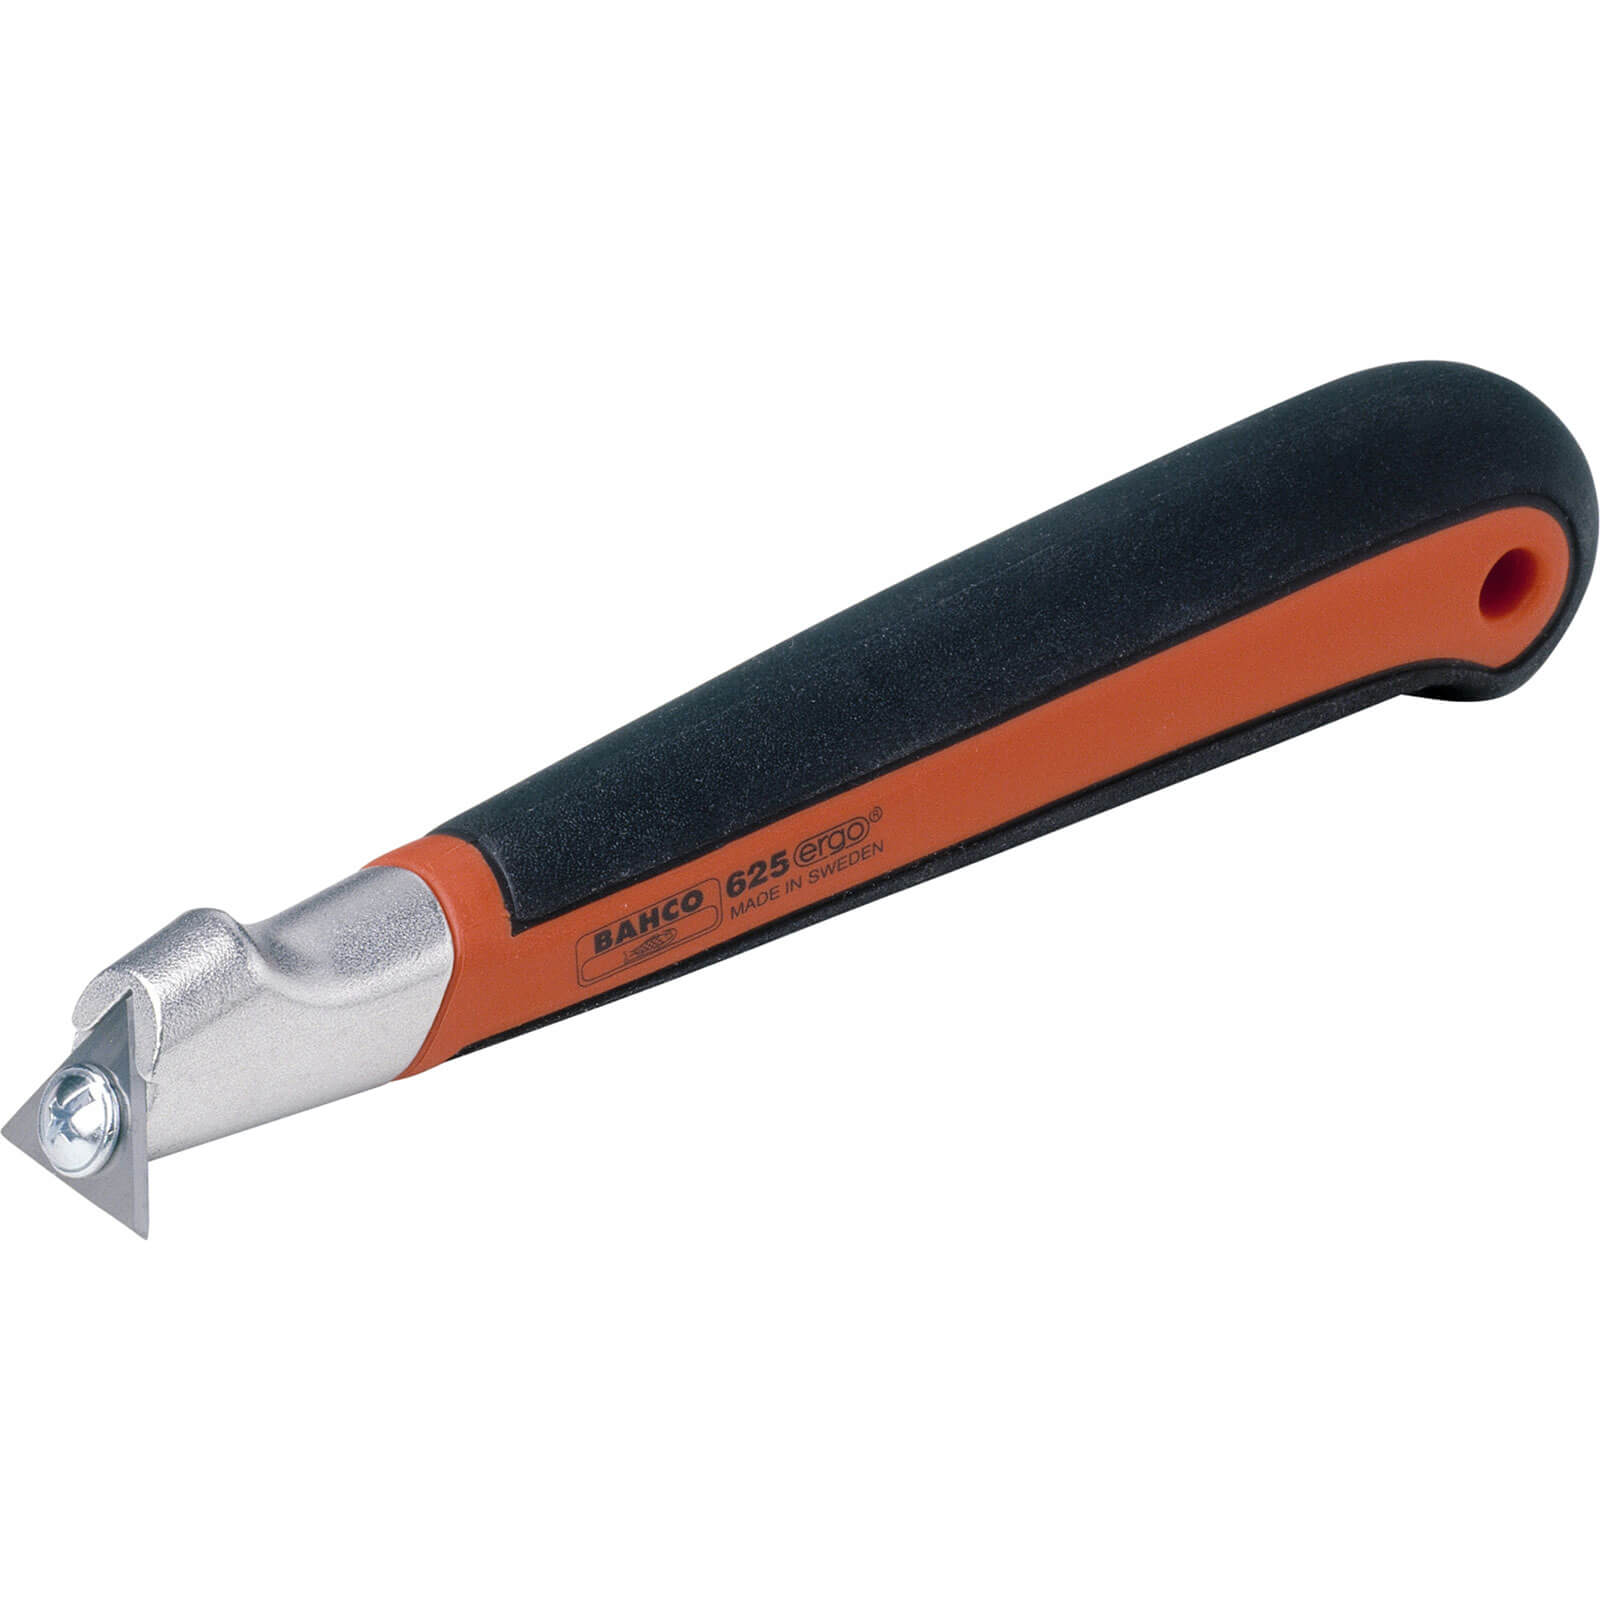 Photo of Bahco Pocket Scraper Carbide Blade